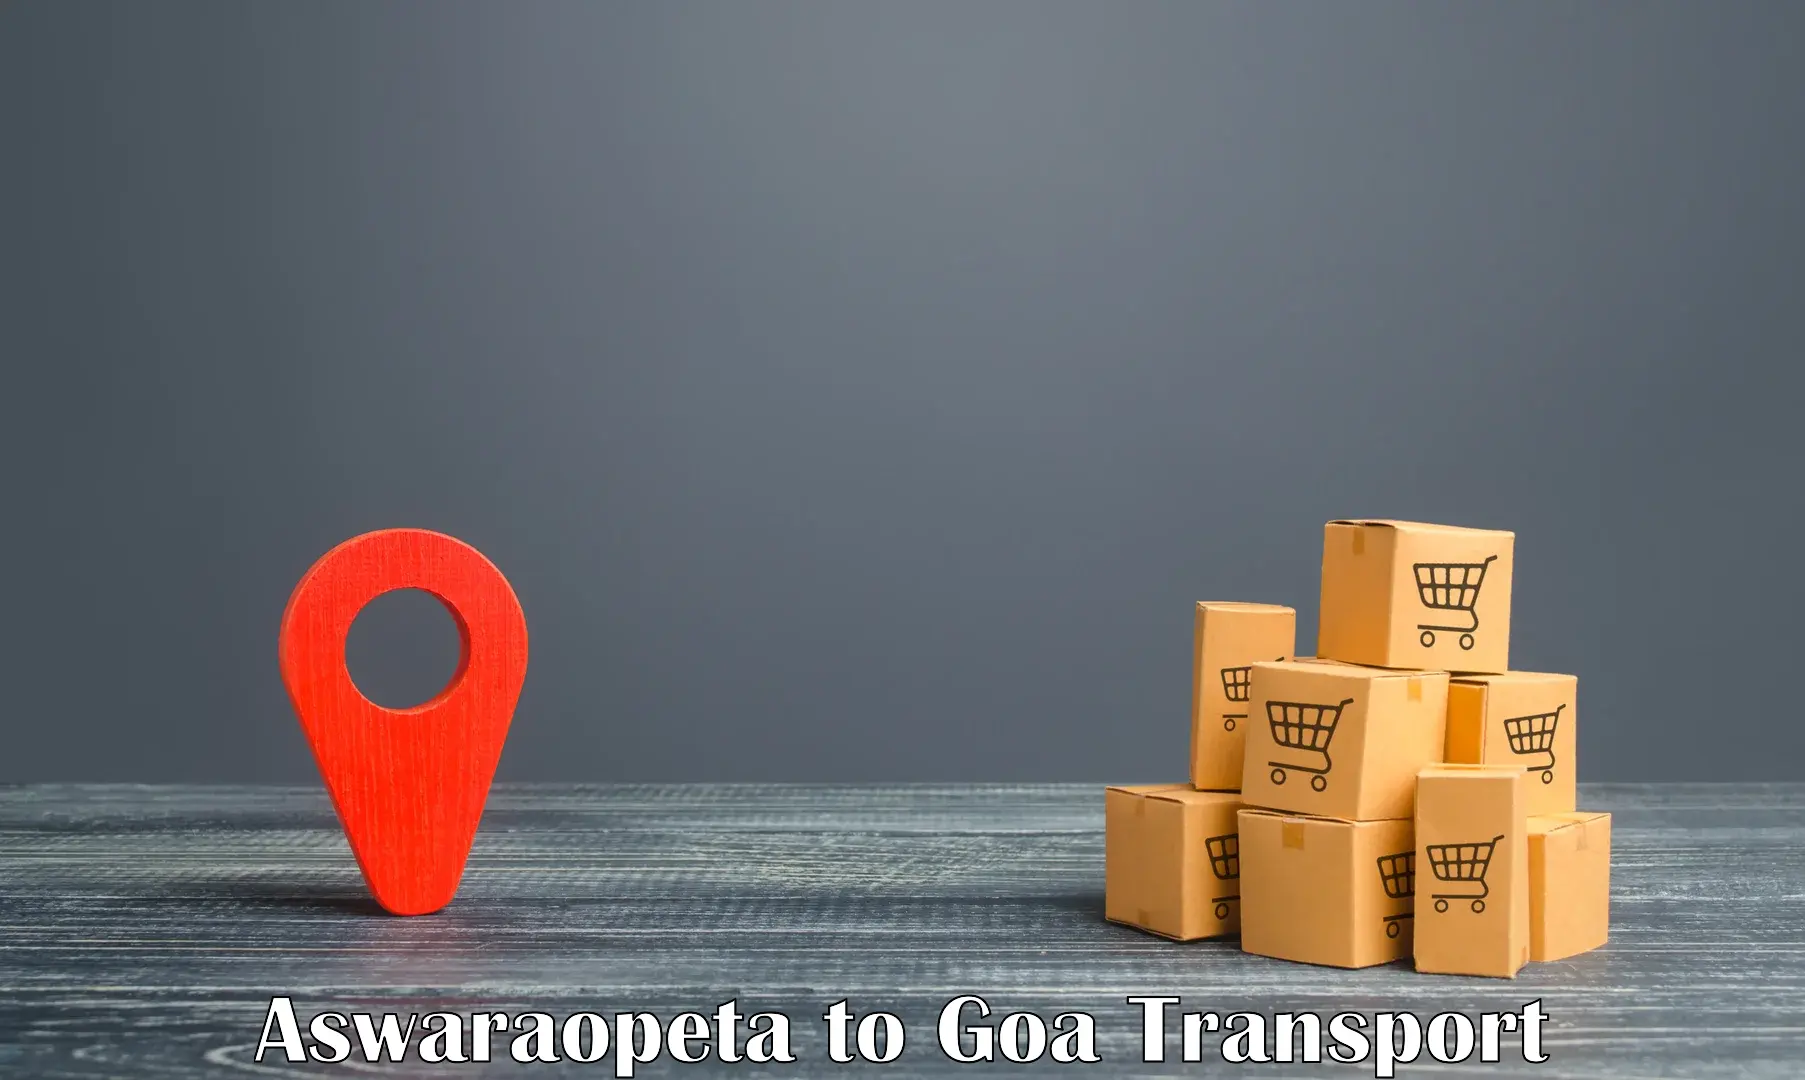 Daily transport service Aswaraopeta to NIT Goa